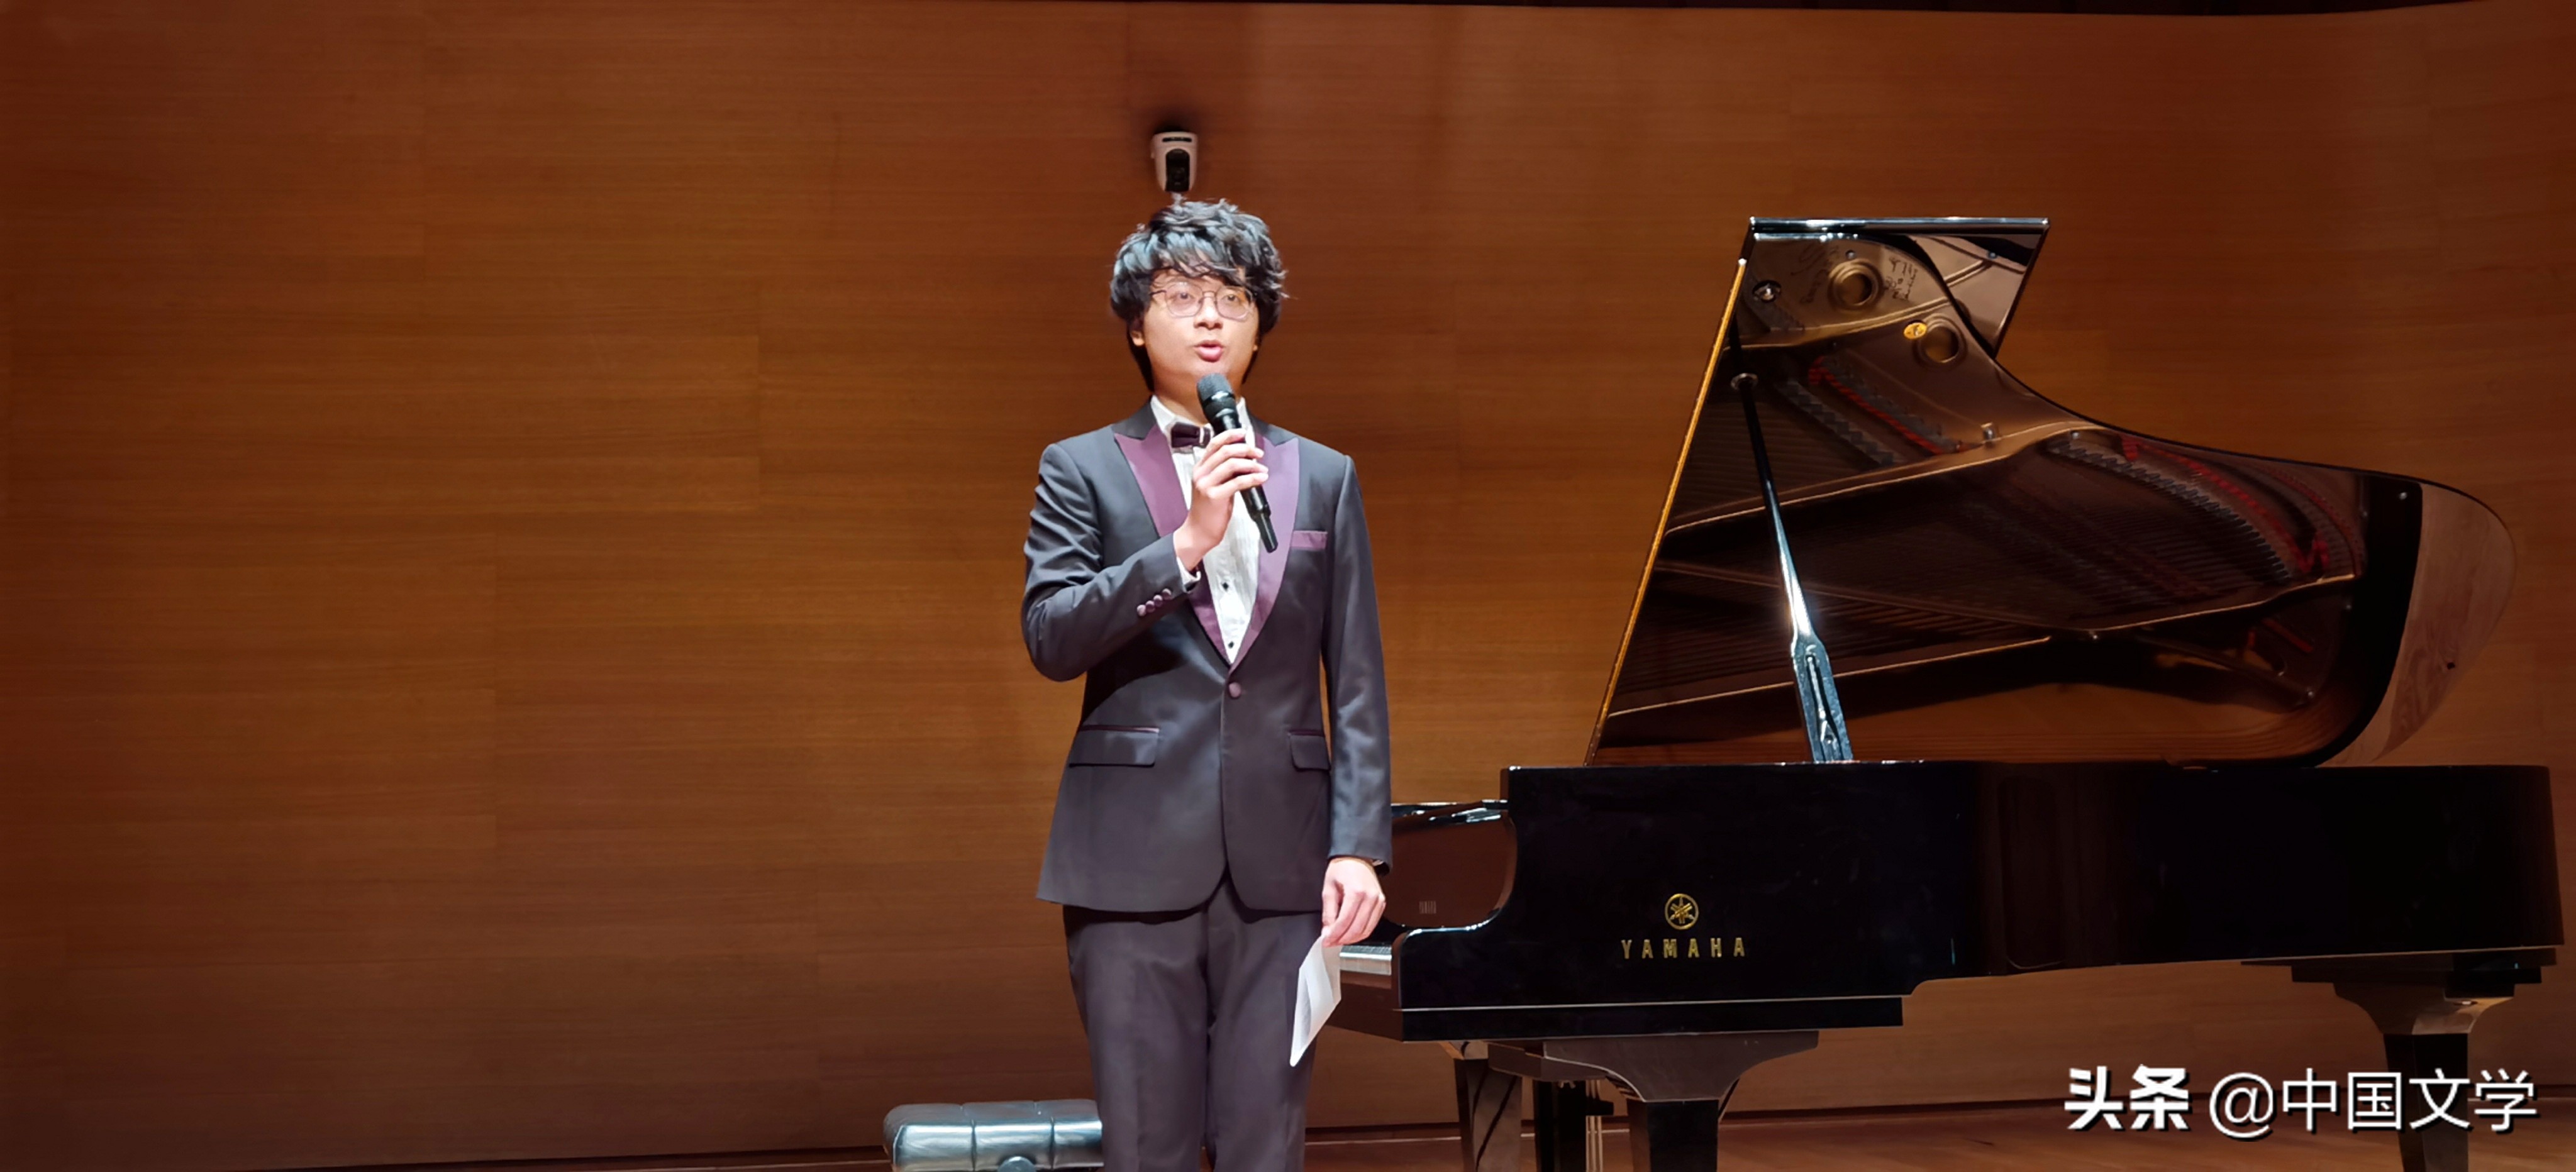 蔡宏博钢琴独奏音乐会在泉州大剧院举行